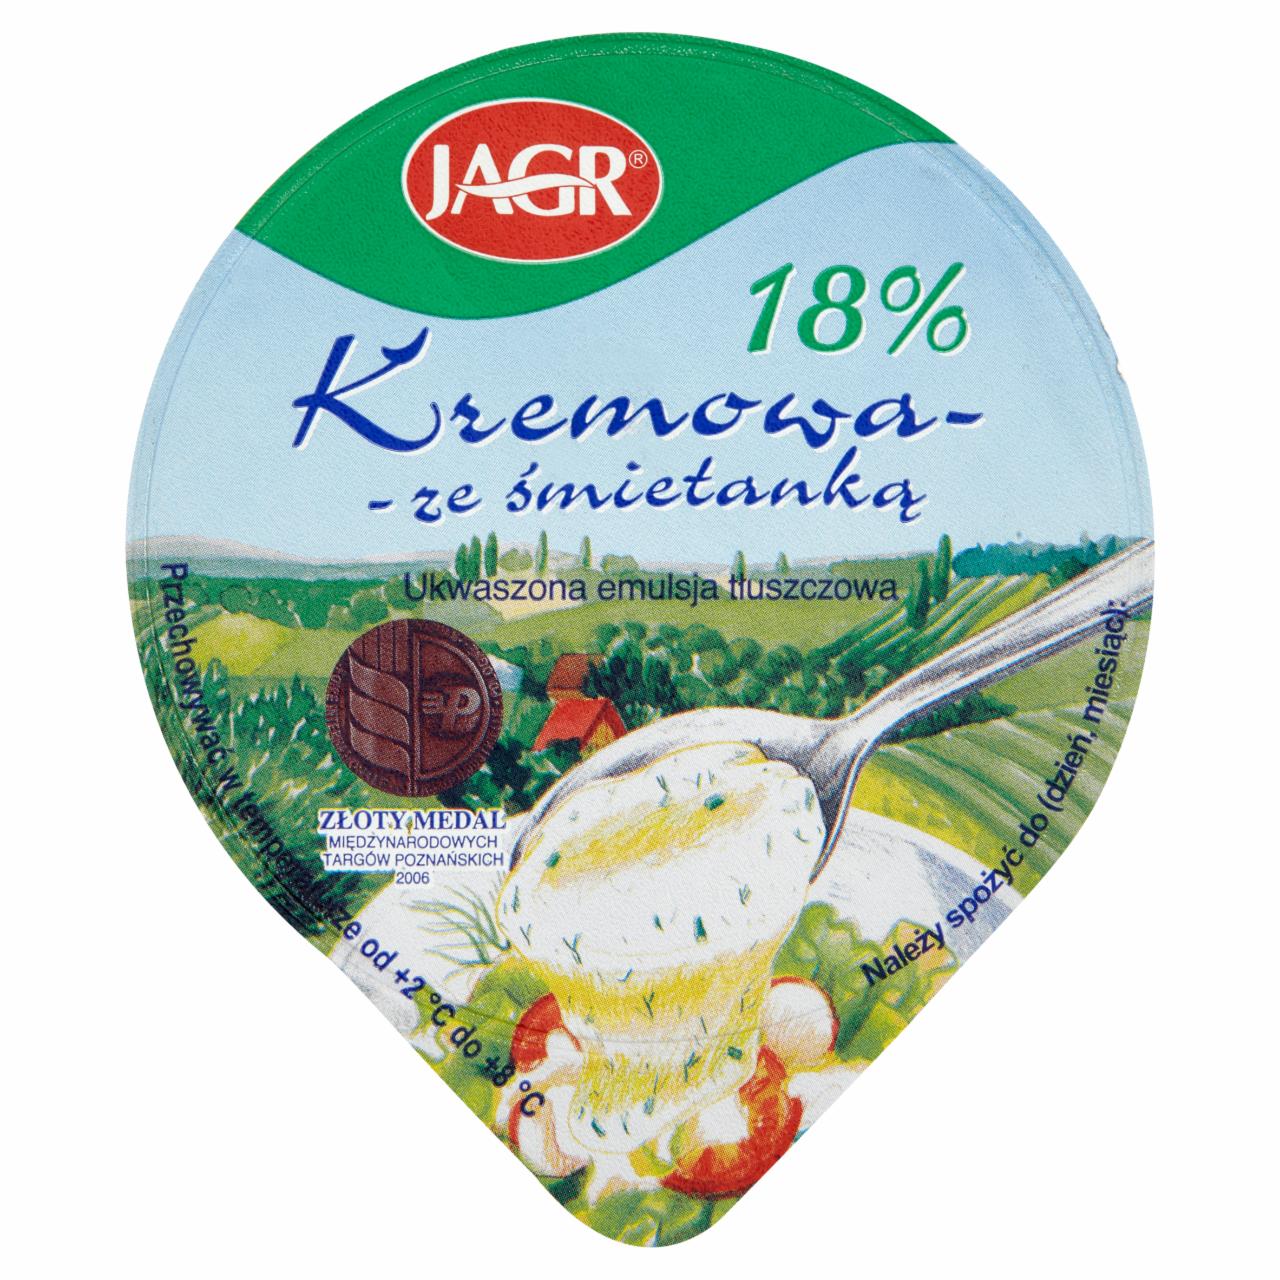 Zdjęcia - Jagr Kremowa ze śmietanką 18% Ukwaszona emulsja tłuszczowa 200 g